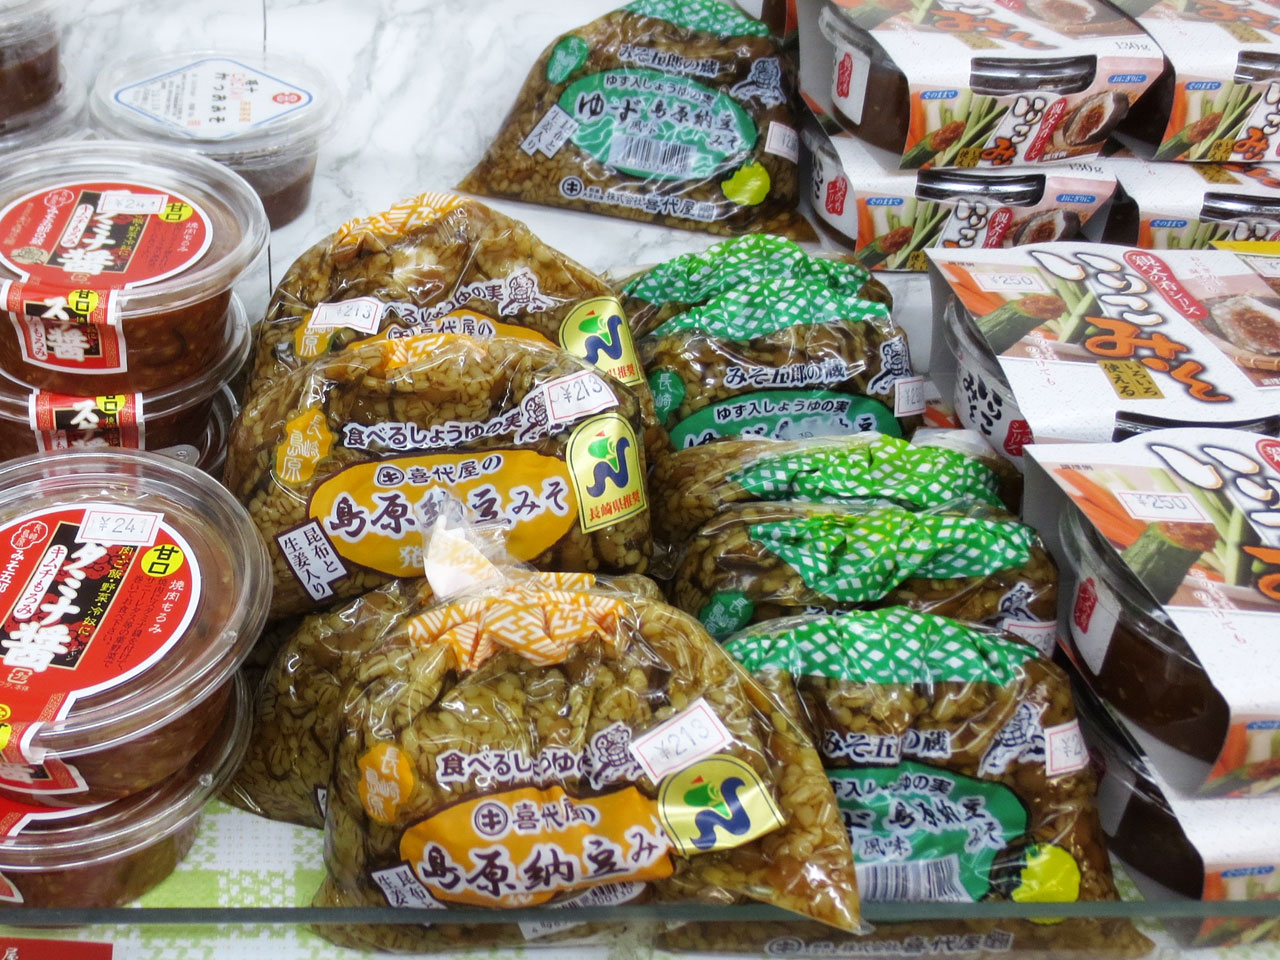 島原納豆みそにちゅうちゅう豆乳 佐世保の納豆棚のお隣な商品たちをご紹介 七転納豆